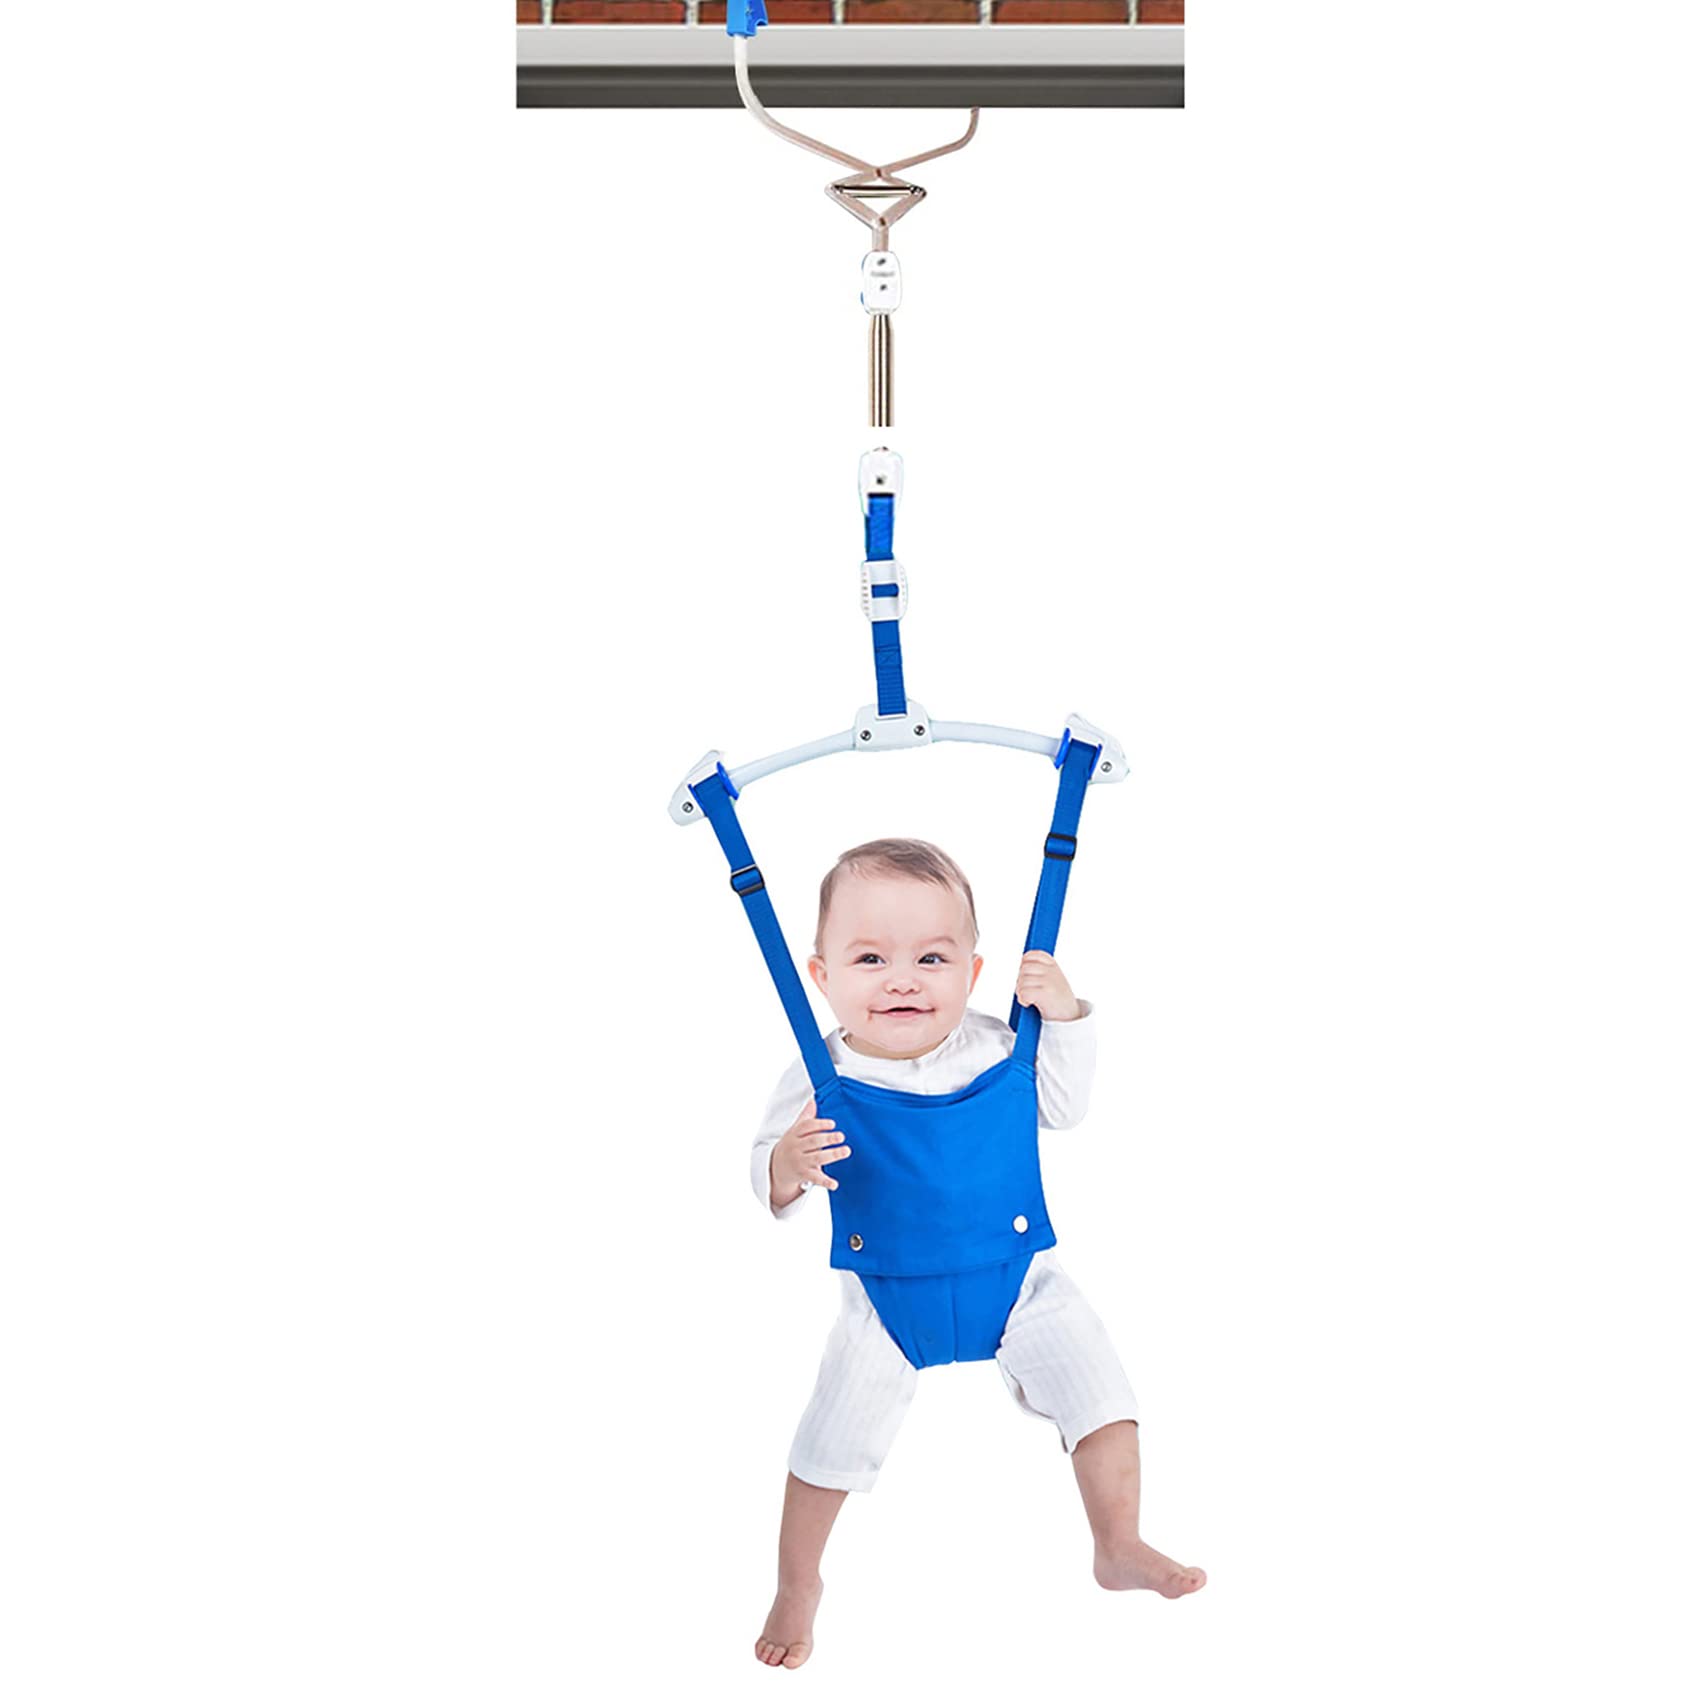 Как безопасно установить детские прыгунки в доме: Секреты комфорта малыша